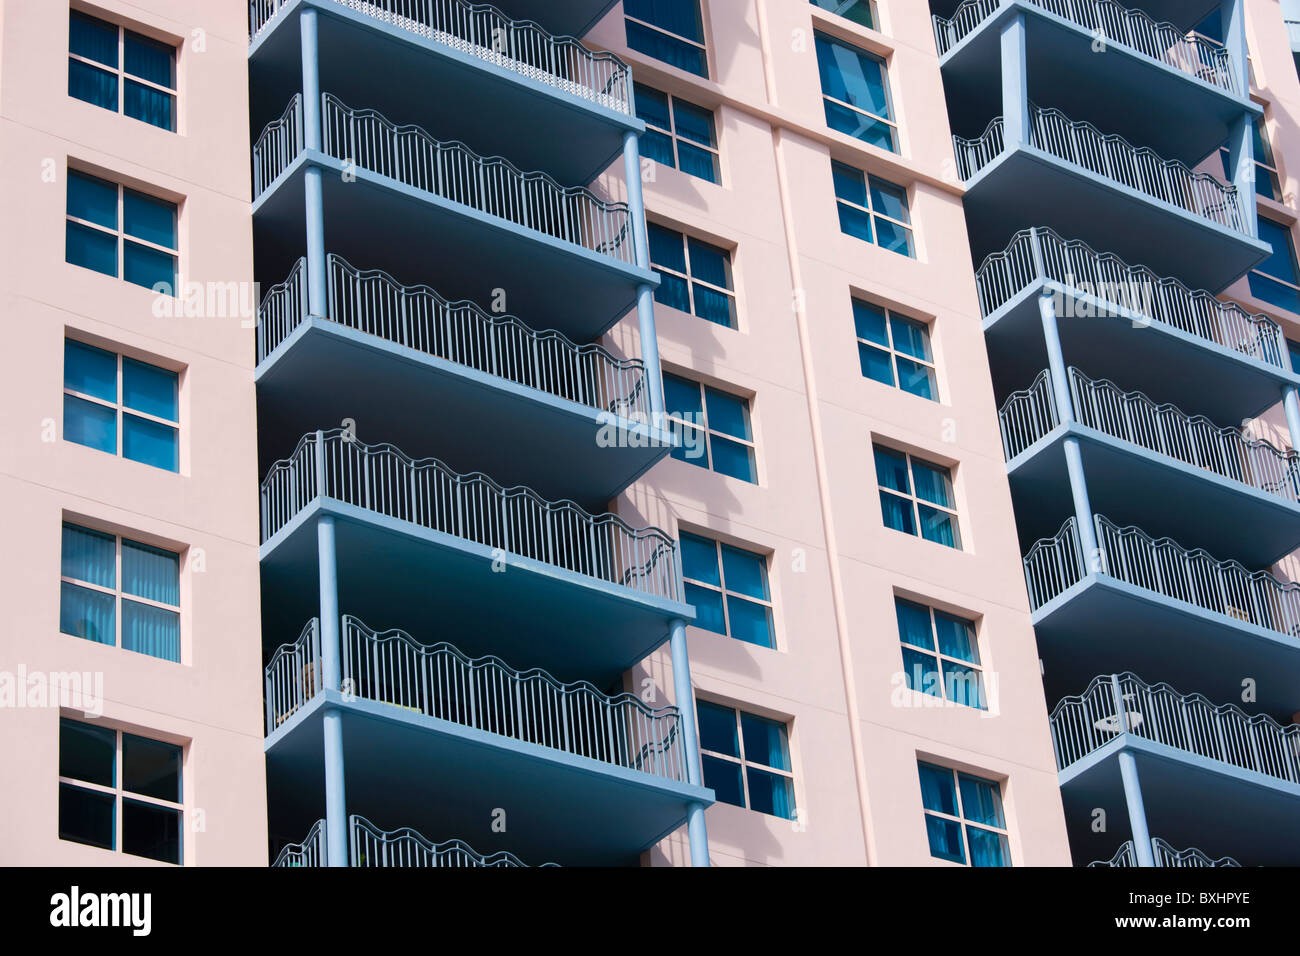 Architettura Art deco, in colori pastello, alto luogo blocchi di appartamenti Ocean Drive e South Beach, Miami, Florida, Stati Uniti d'America Foto Stock